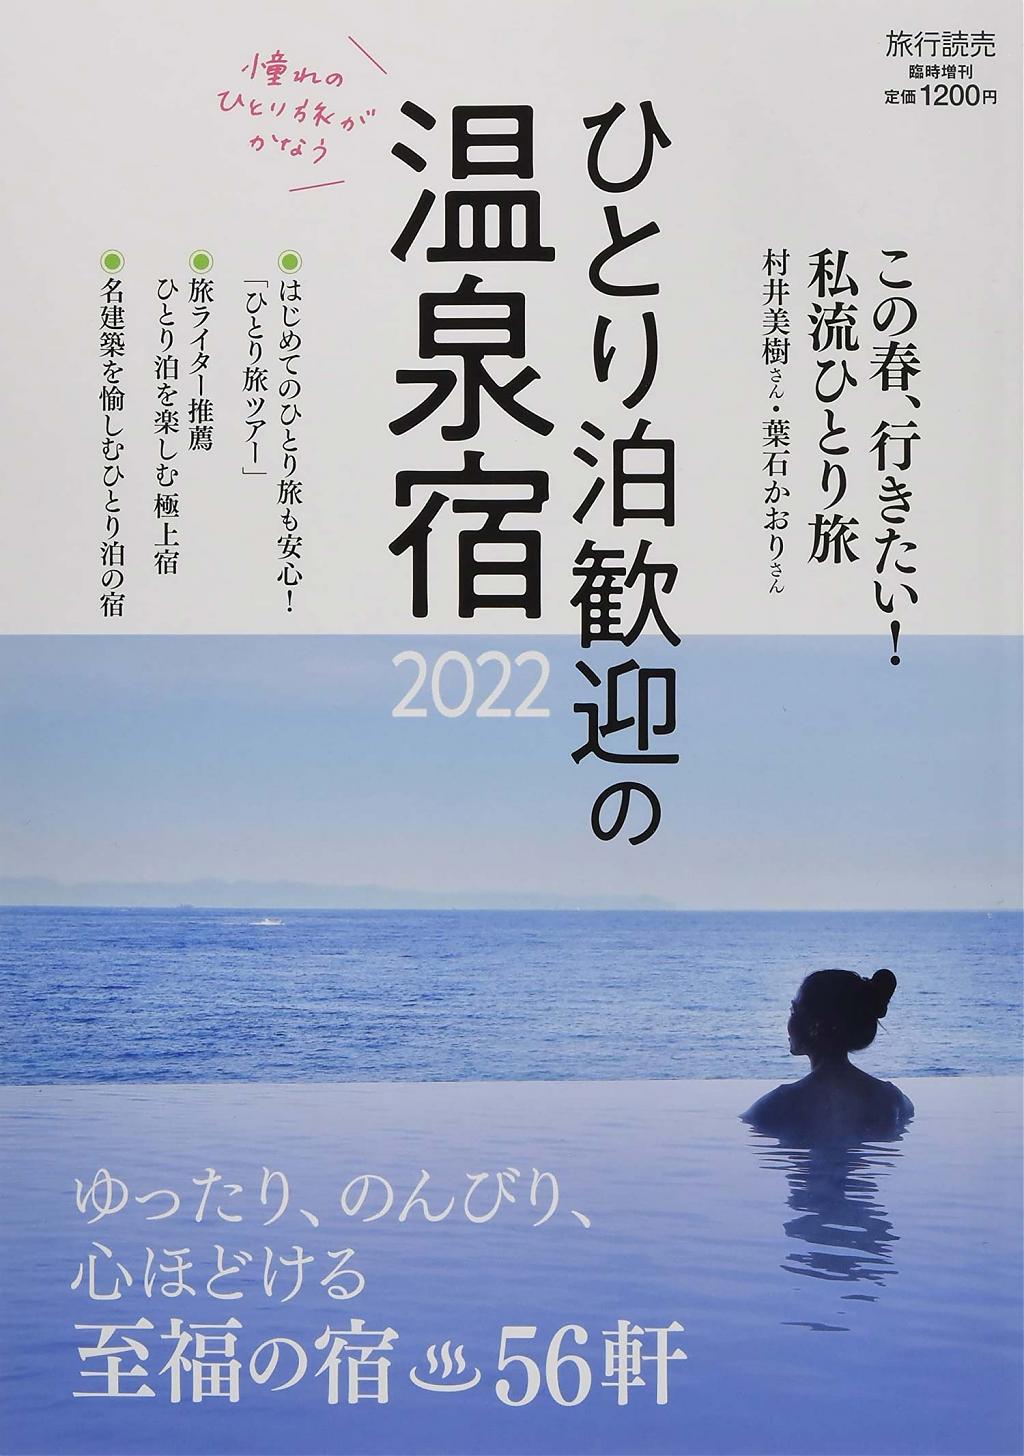 Japanese magazine about enjoying hot springs alone